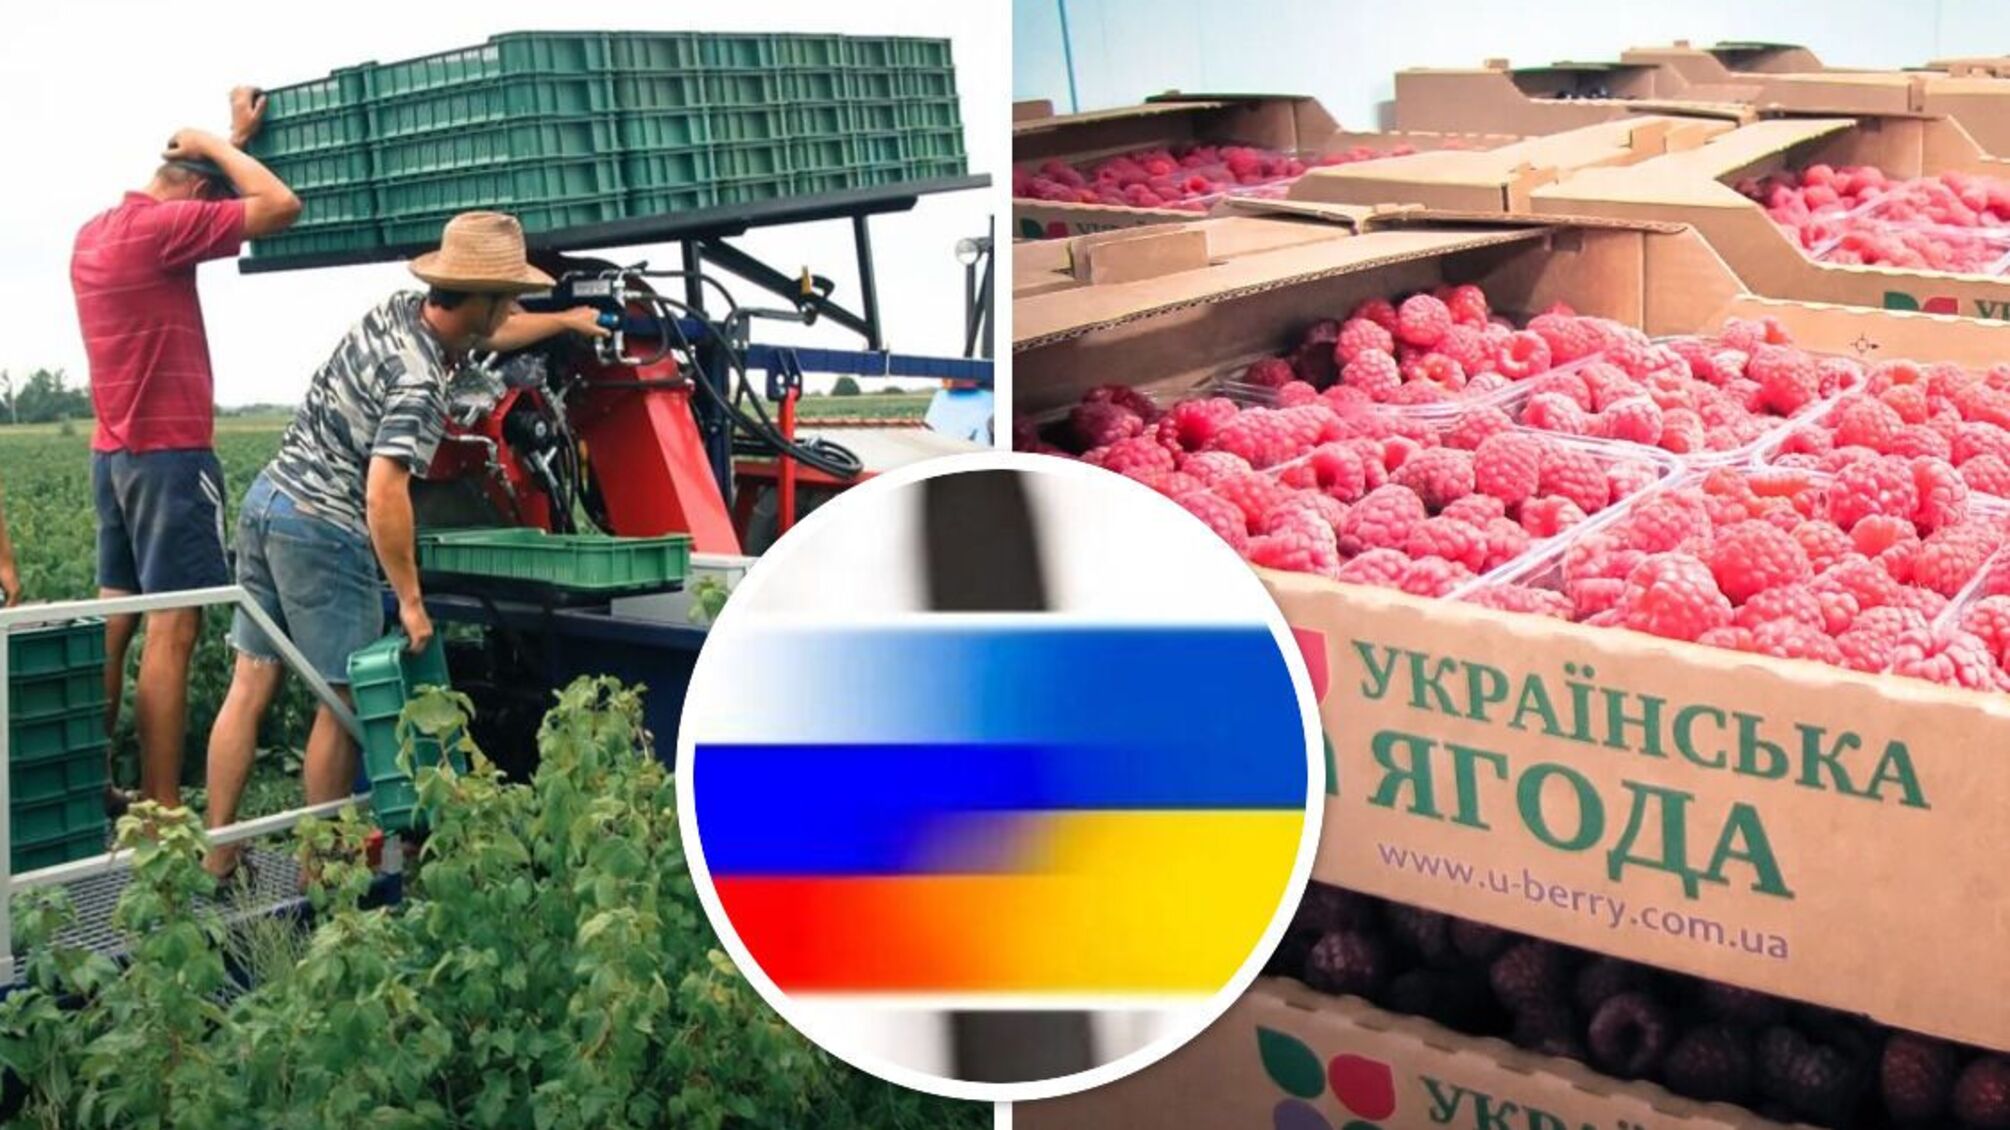 Російська лохина: власниками ягідного бренду на Житомирщині виявились громадяни рф